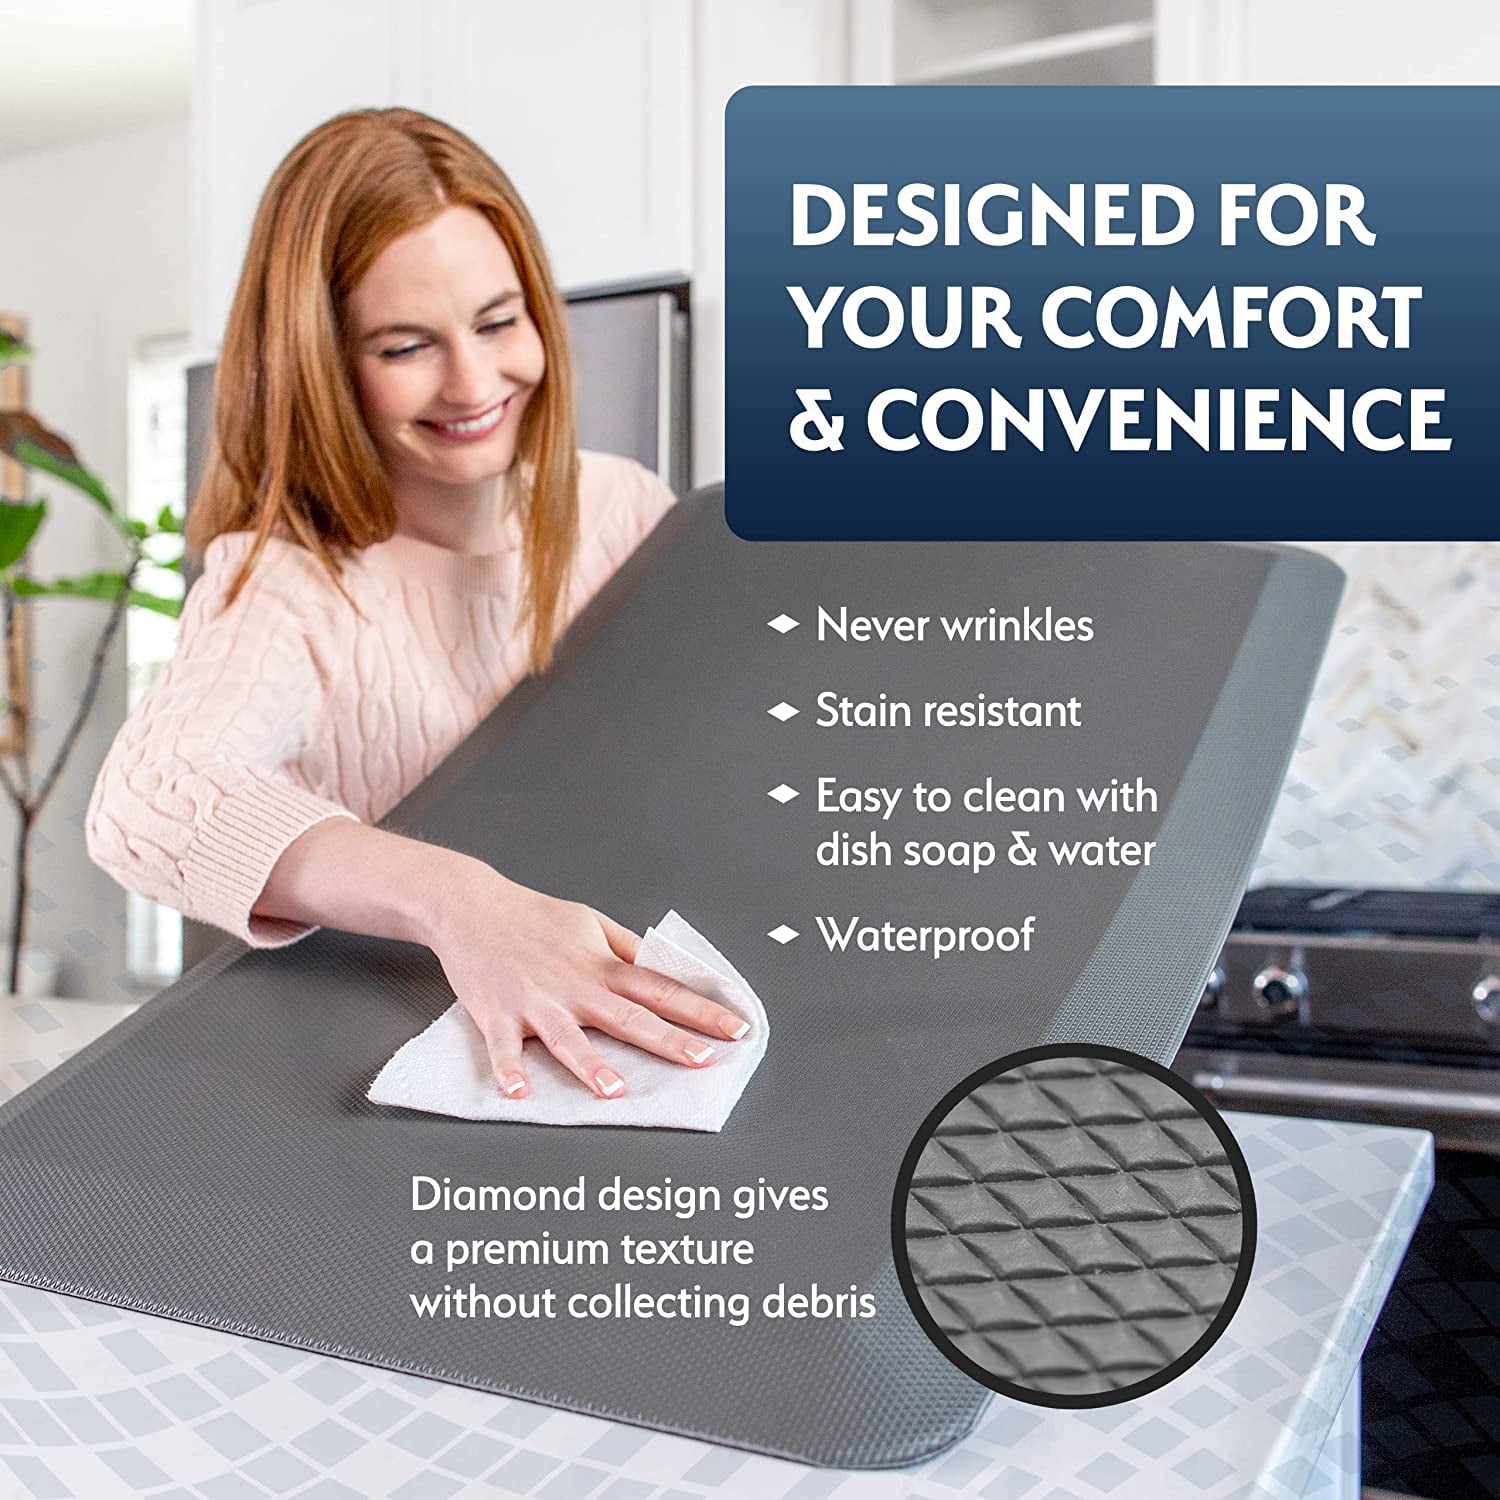 SKY MATS Anti-Fatigue Floor Mat - Commercial Grade Comfort Foam